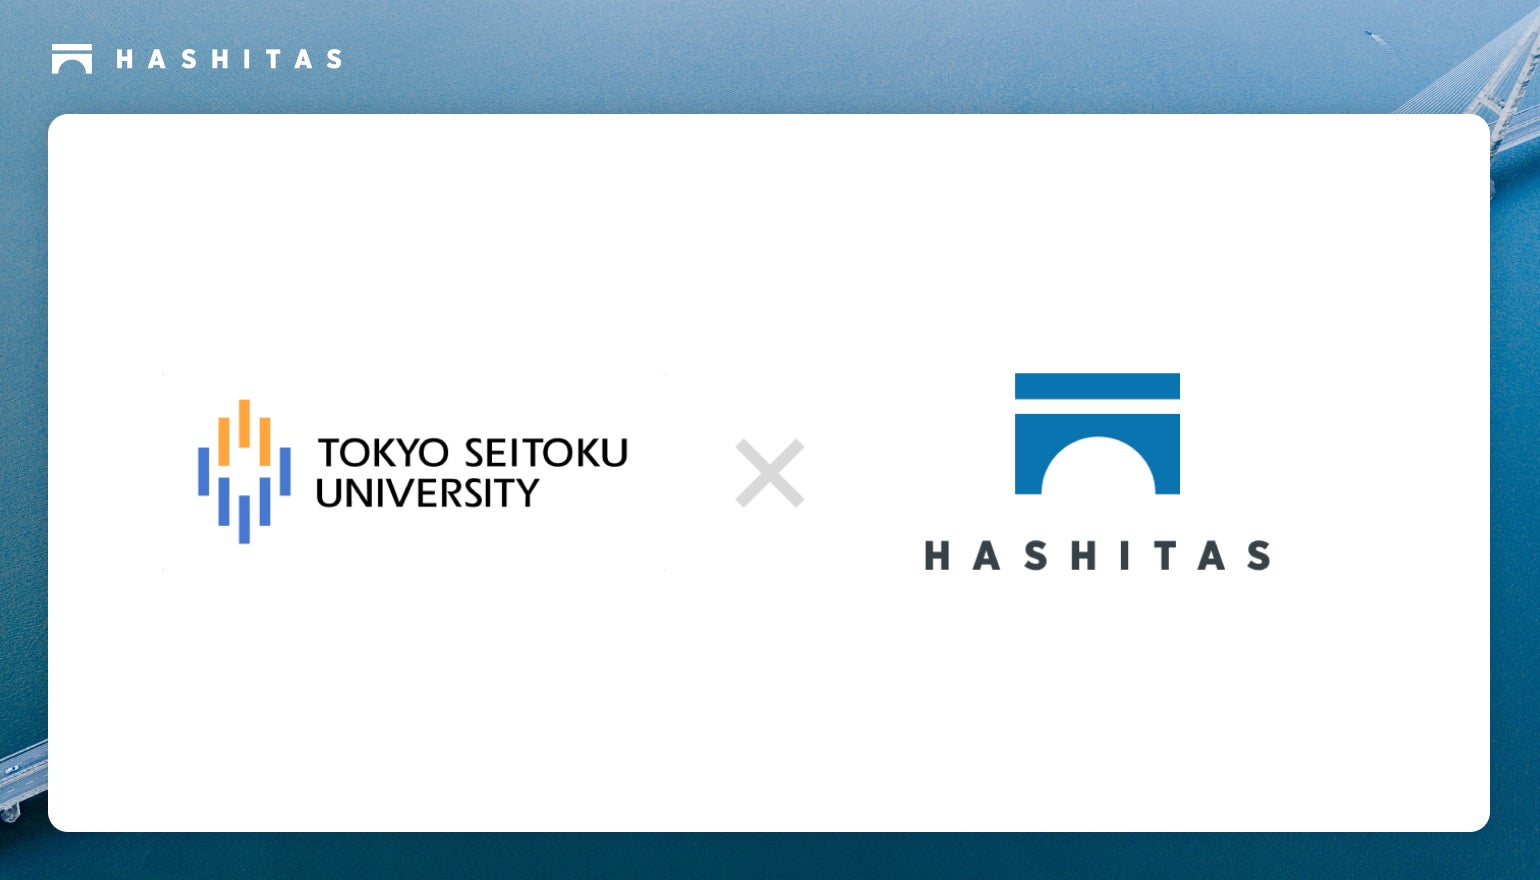 株式会社ハシタスは東京成徳大学 夏原隆之准教授とプロダクト開発における学術的パートナー契約を締結しました。